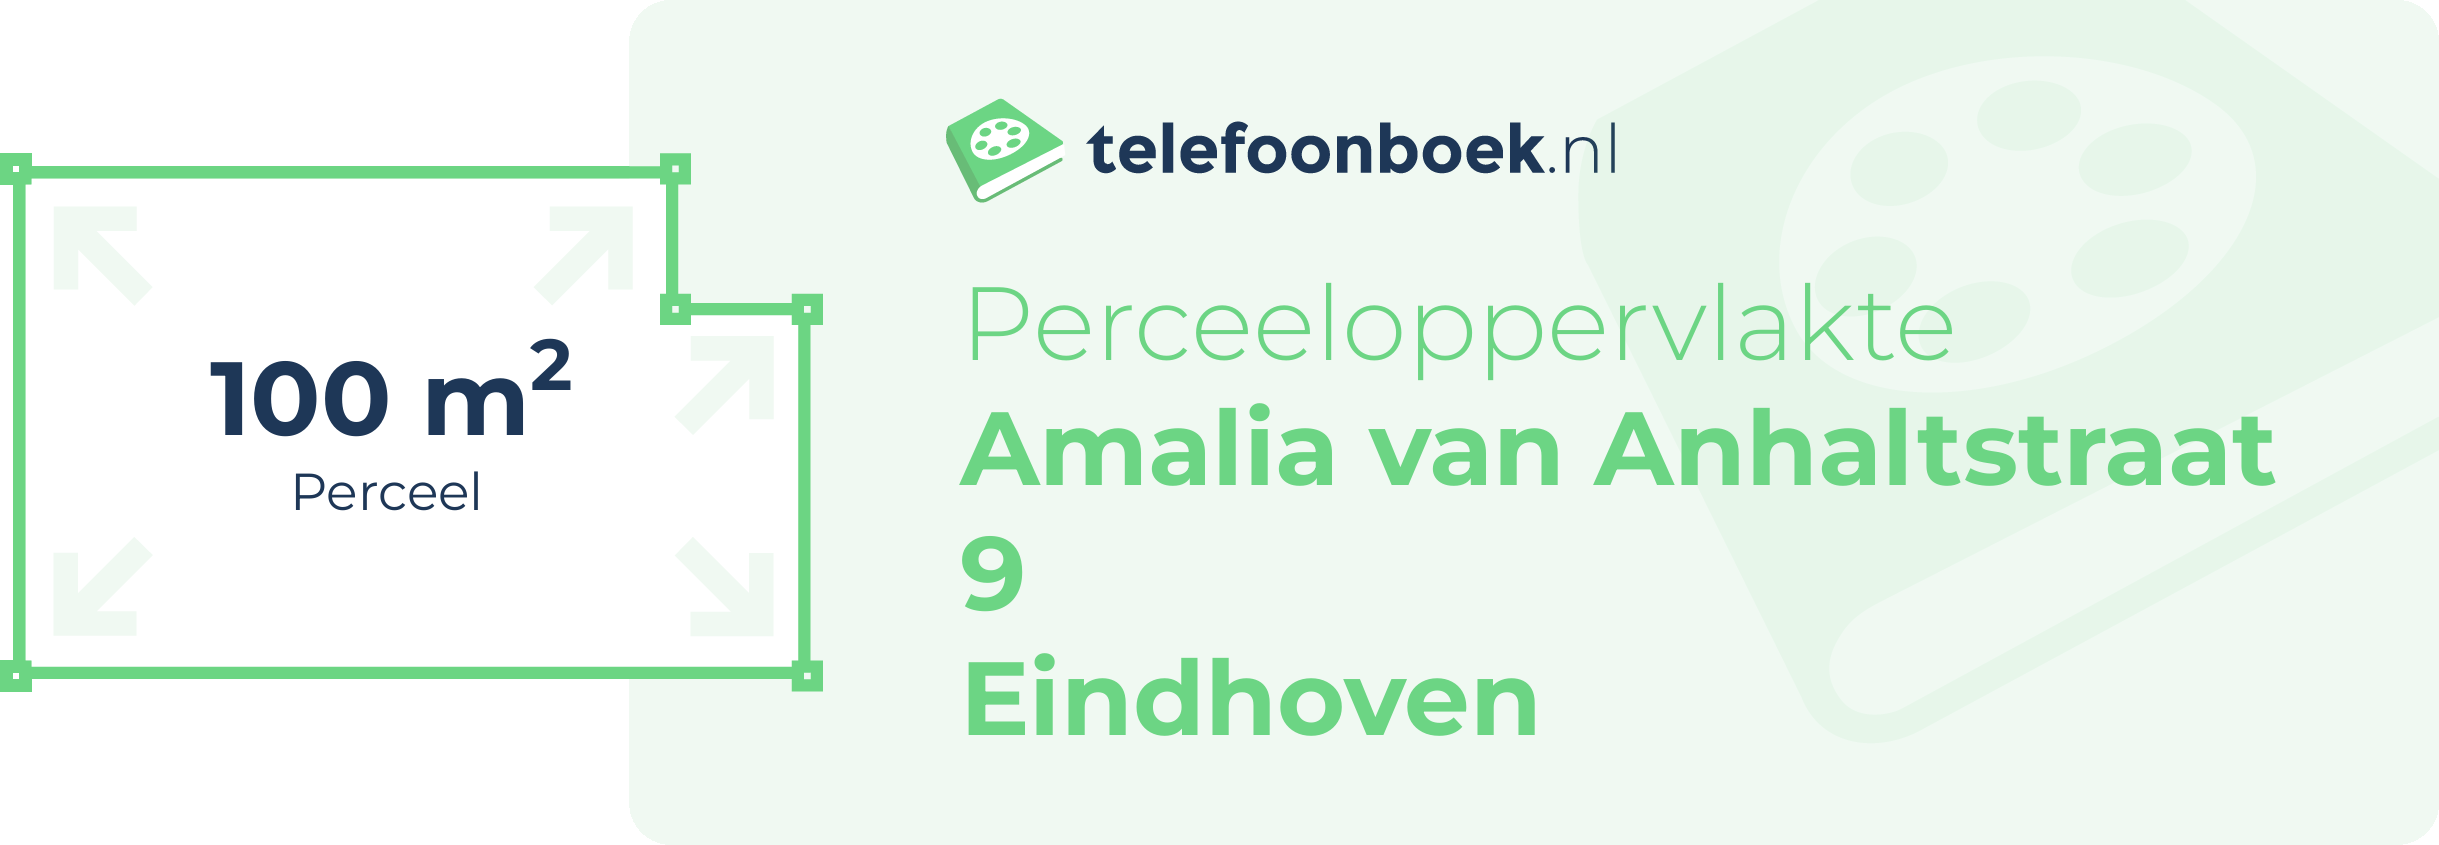 Perceeloppervlakte Amalia Van Anhaltstraat 9 Eindhoven